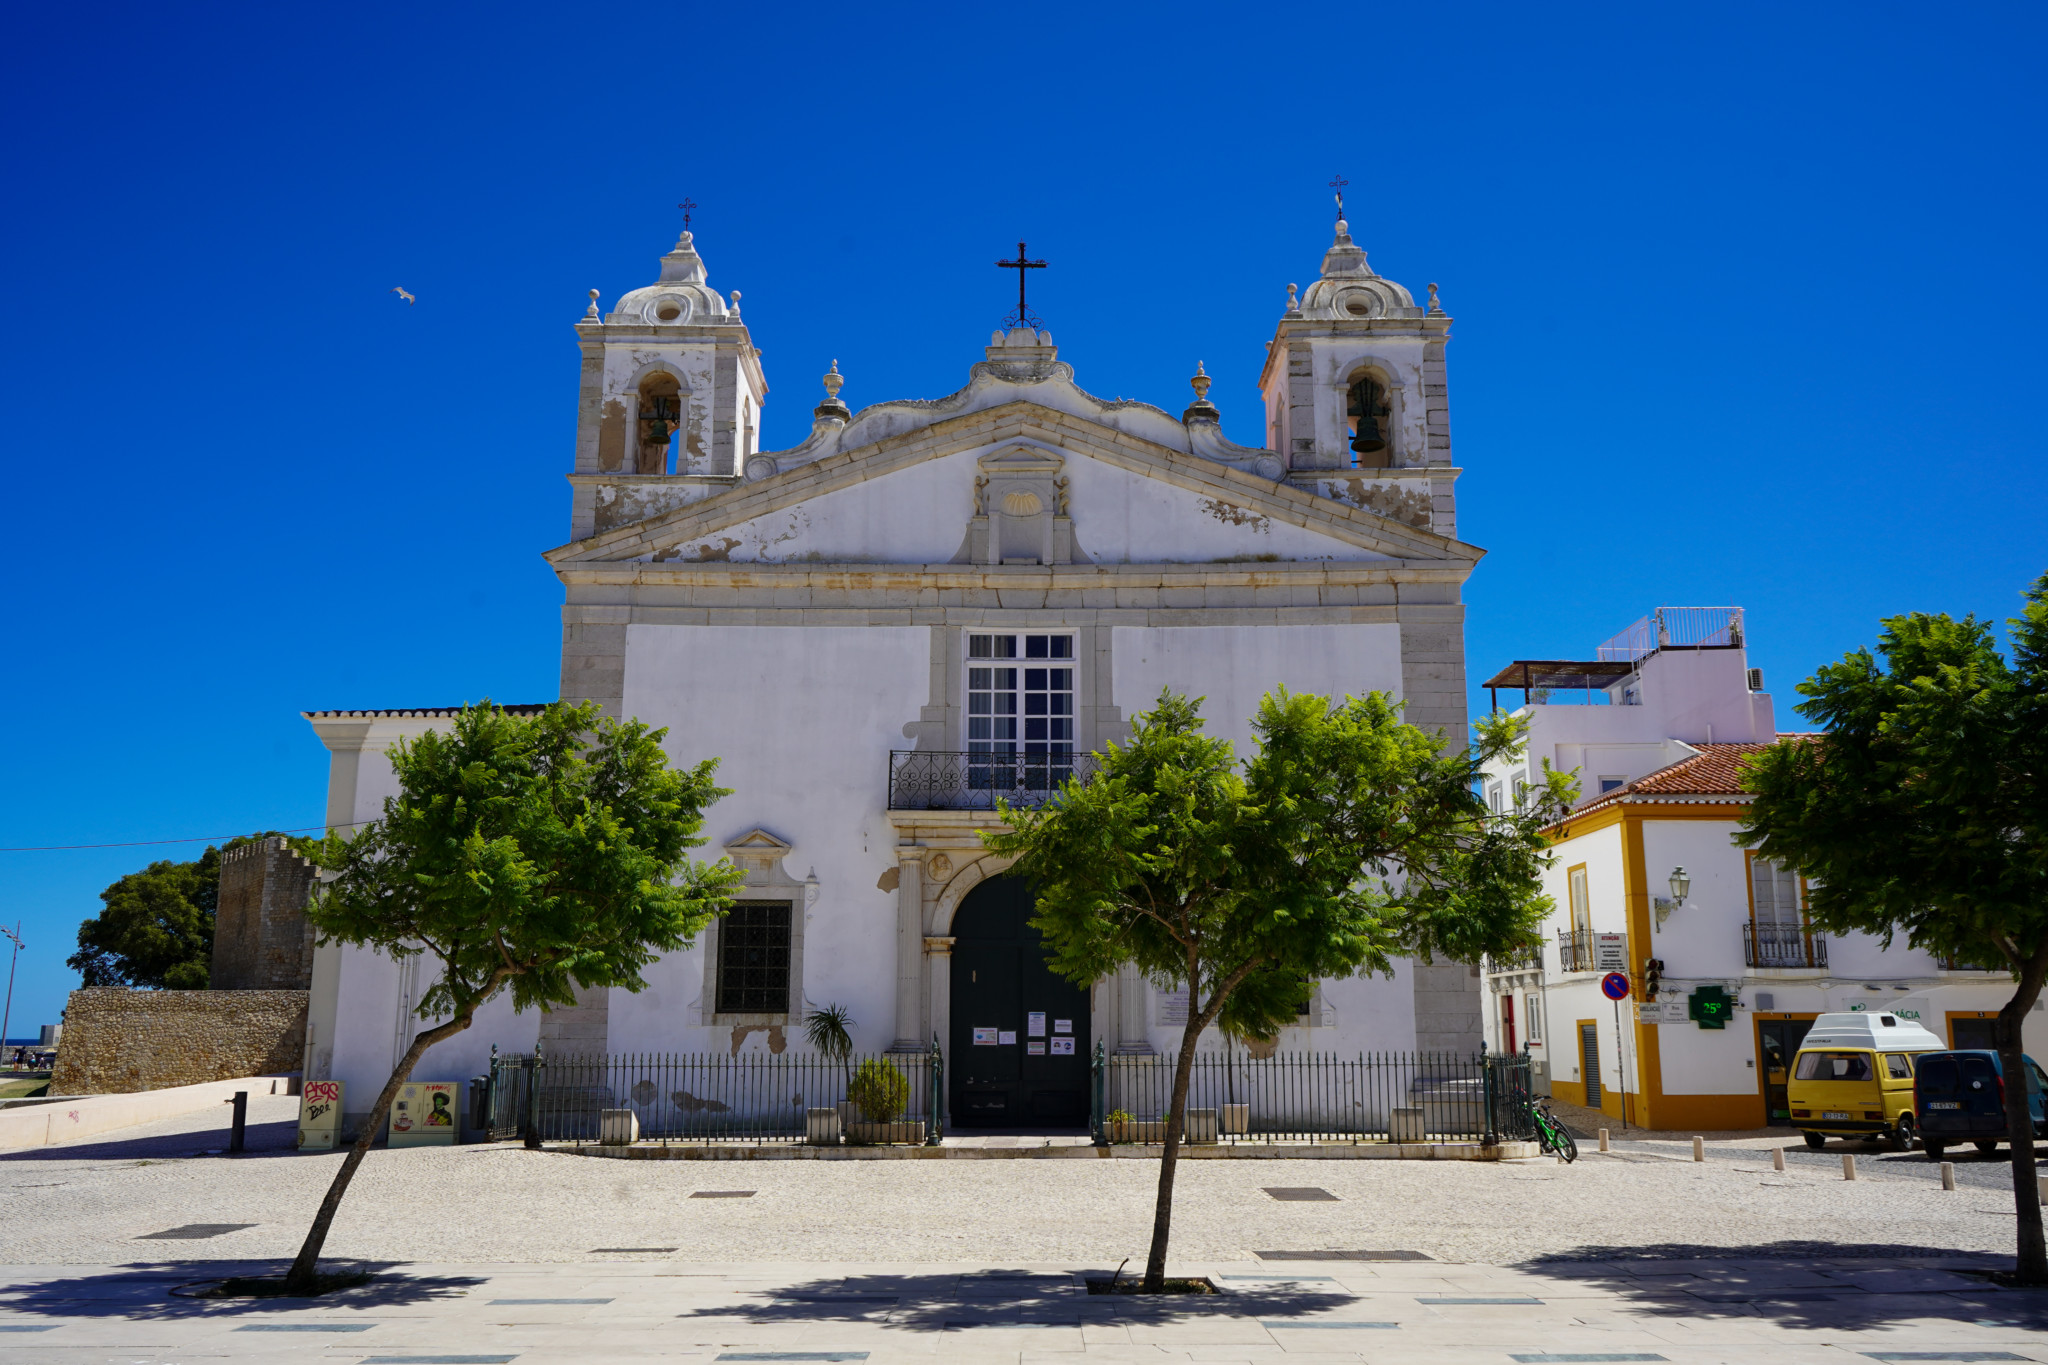 Die Kathedrale ist das Herzstück der Innenstadt von Lagos und eine der wichtigsten Algarve-Sehenswürdigkeiten